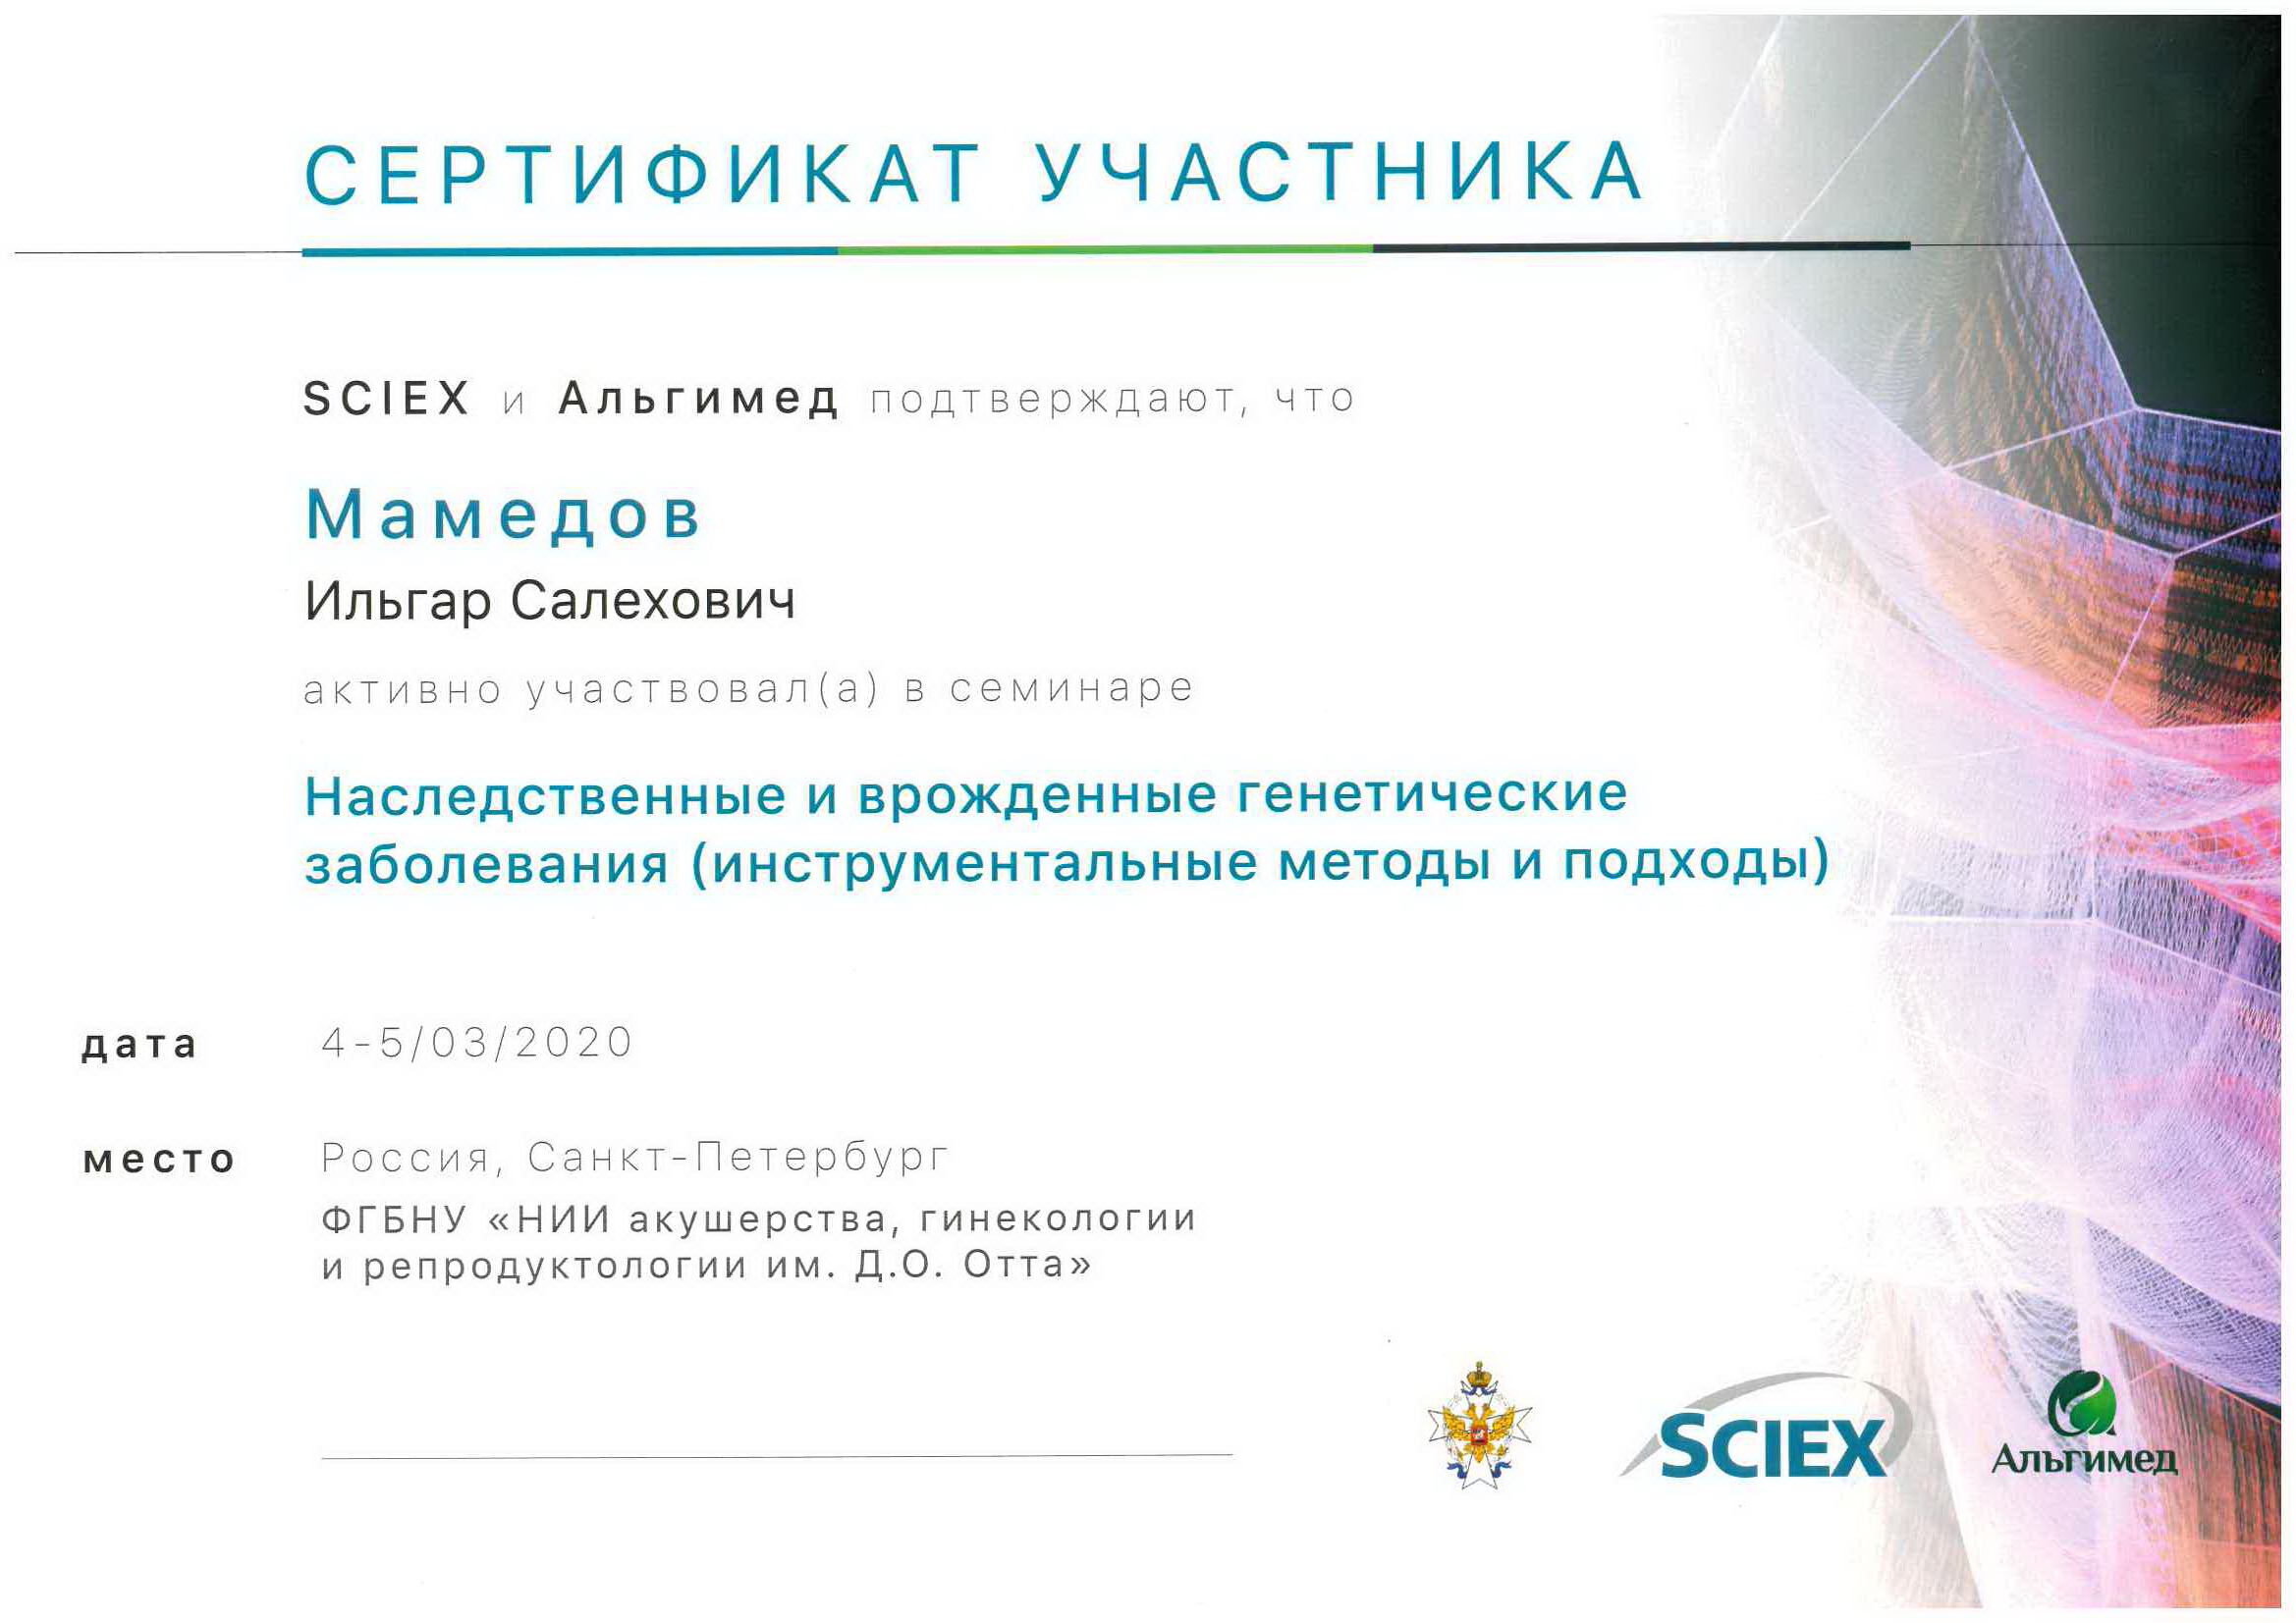 Сертификат участника семинара. Наследственные и врождённые генетические заболевания (инструментальные методы и подходы). 2020